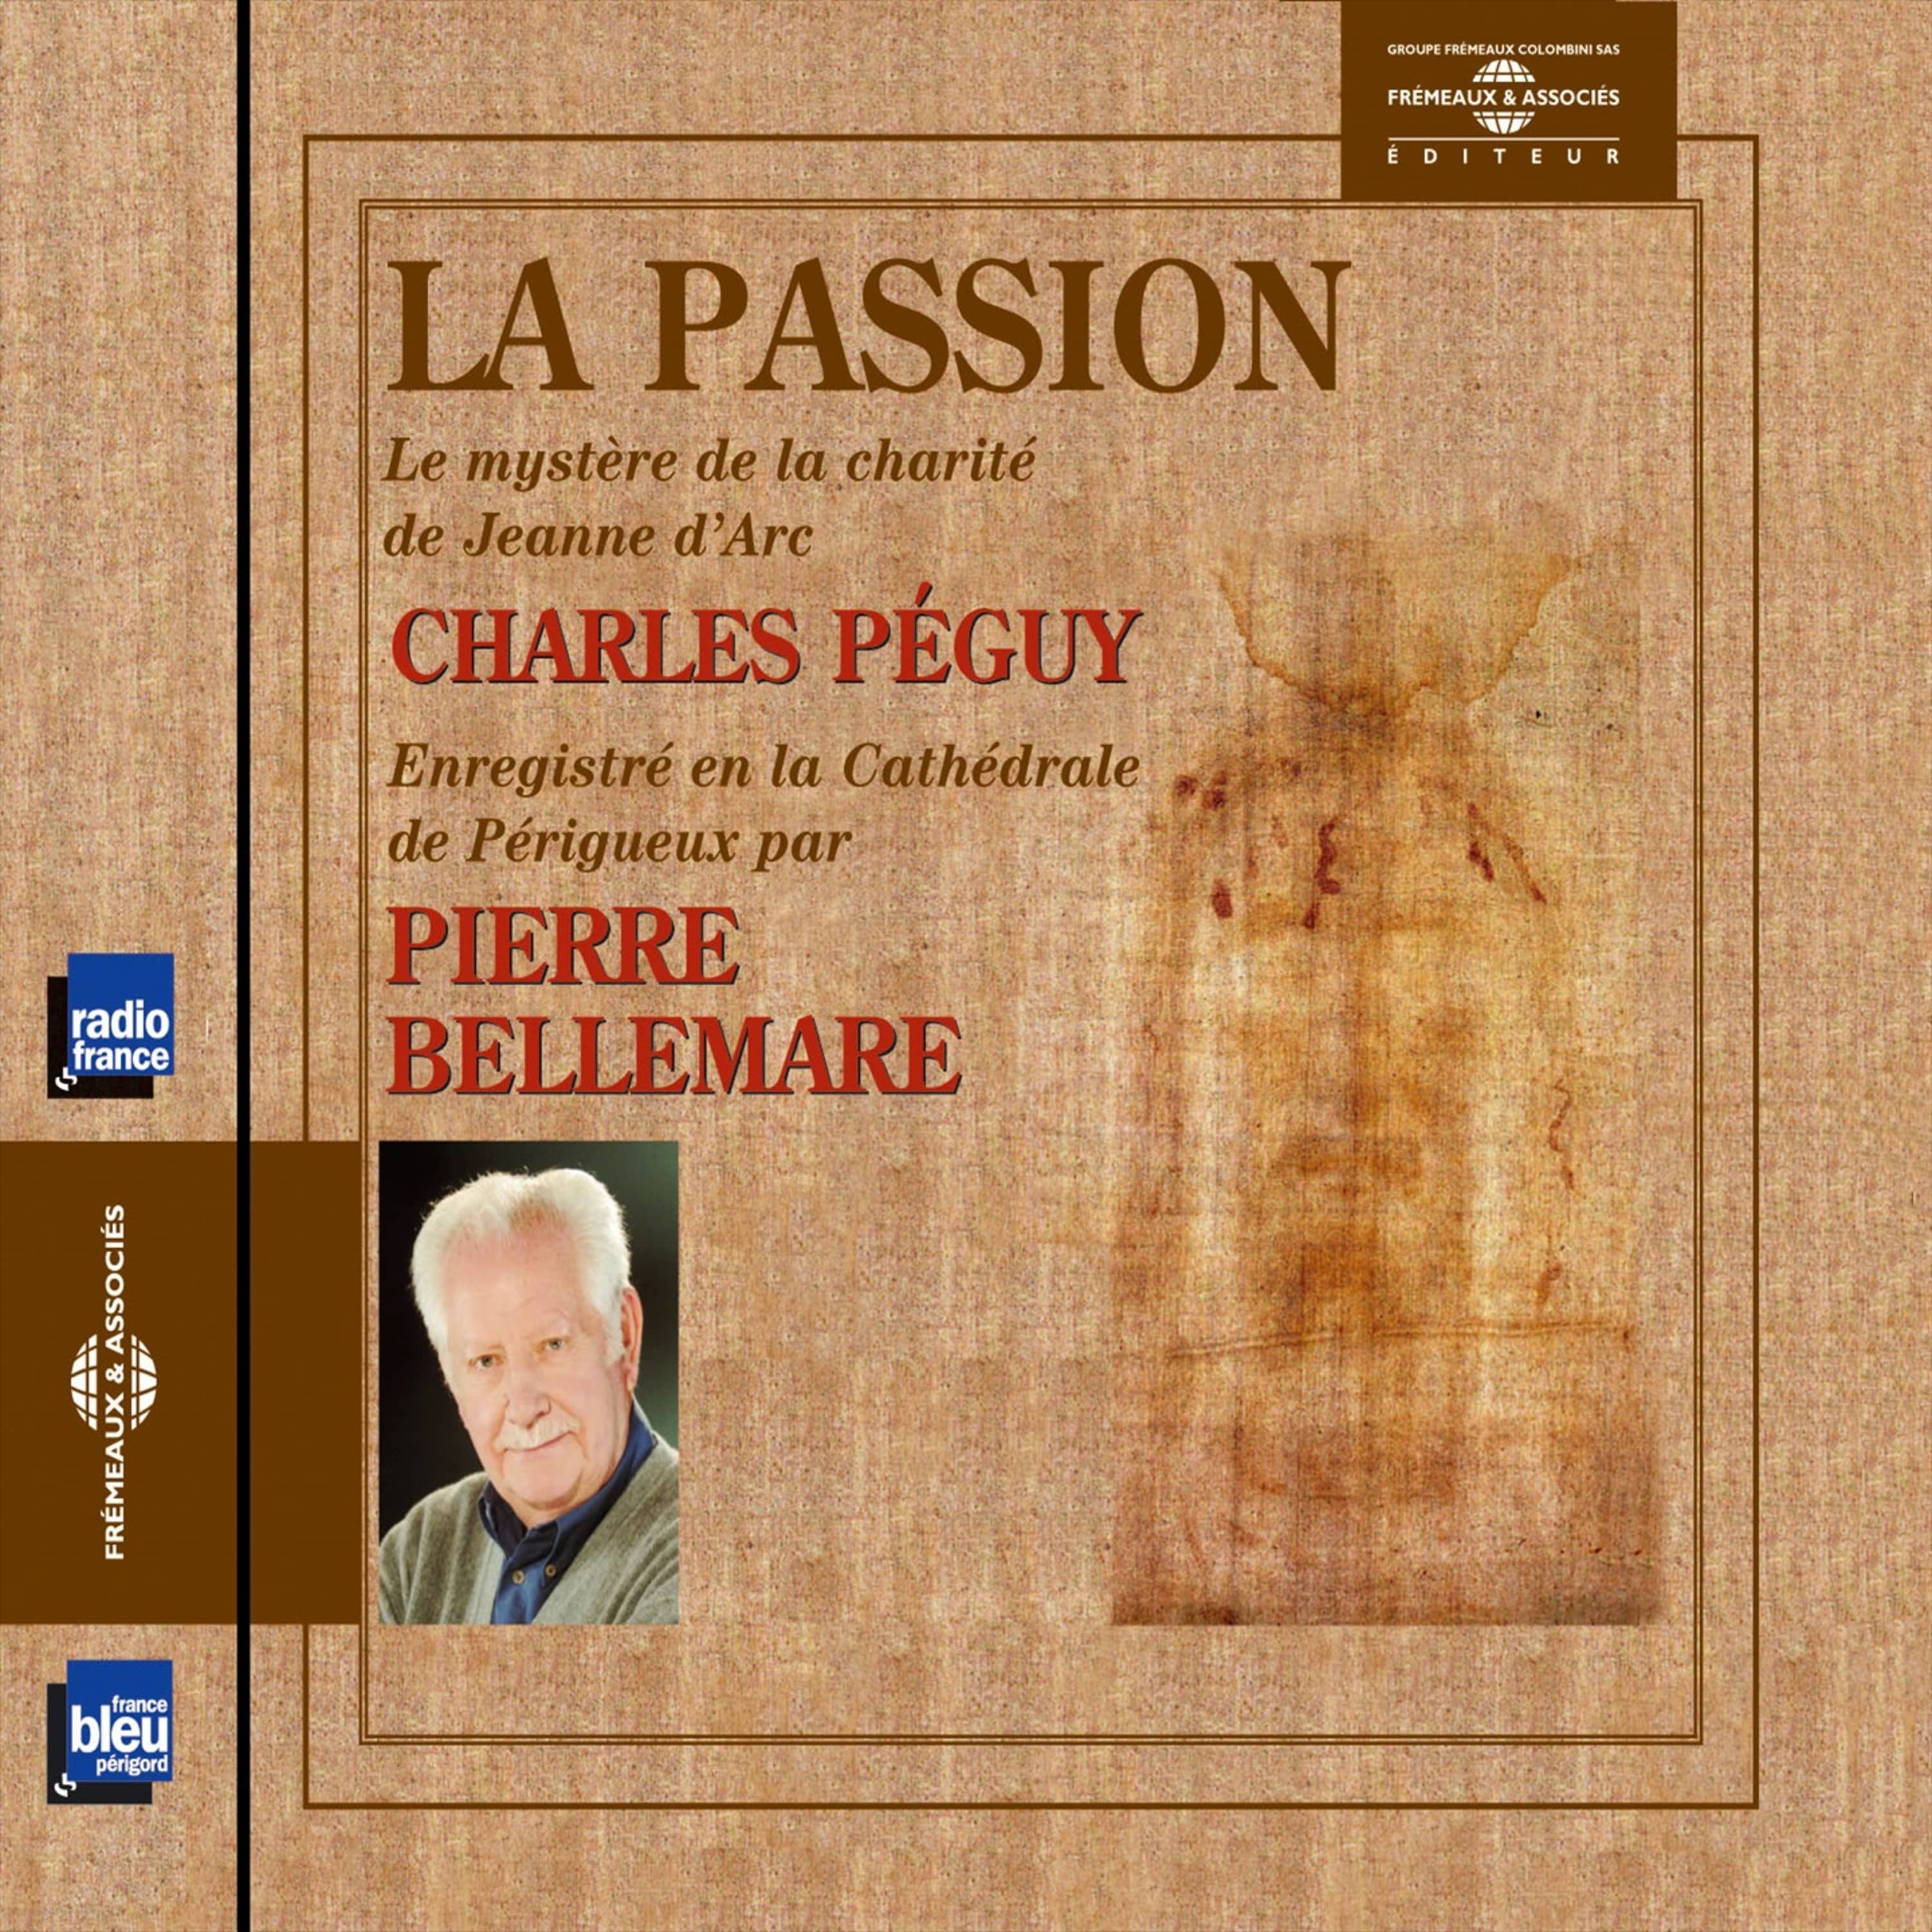 Couverture du livre audio La passion (le mystère de la charité de Jeanne d'Arc) De Charles Peguy 